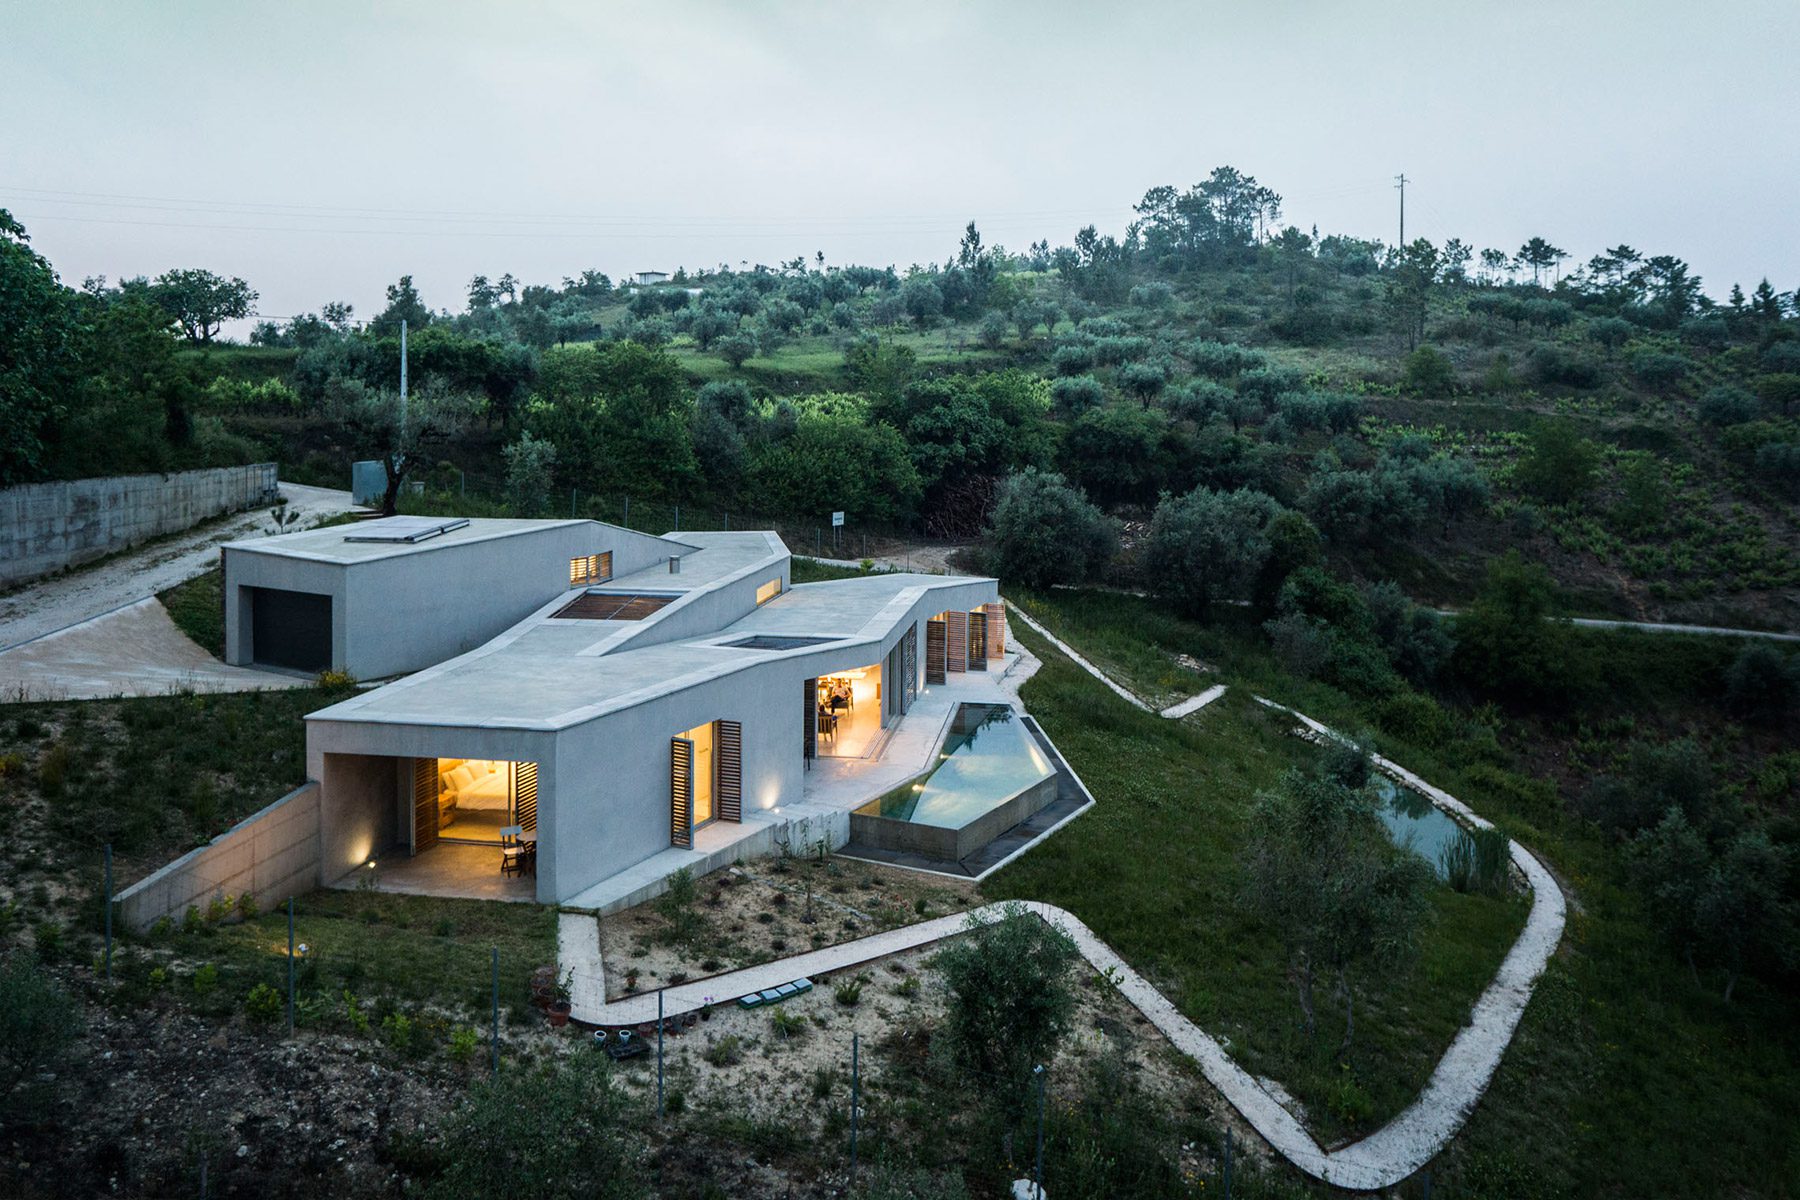 El estudio de arquitectura Camarim diseña una vivienda en la portuguesa Sierra de la Estrella que se mimetiza con el paisaje.